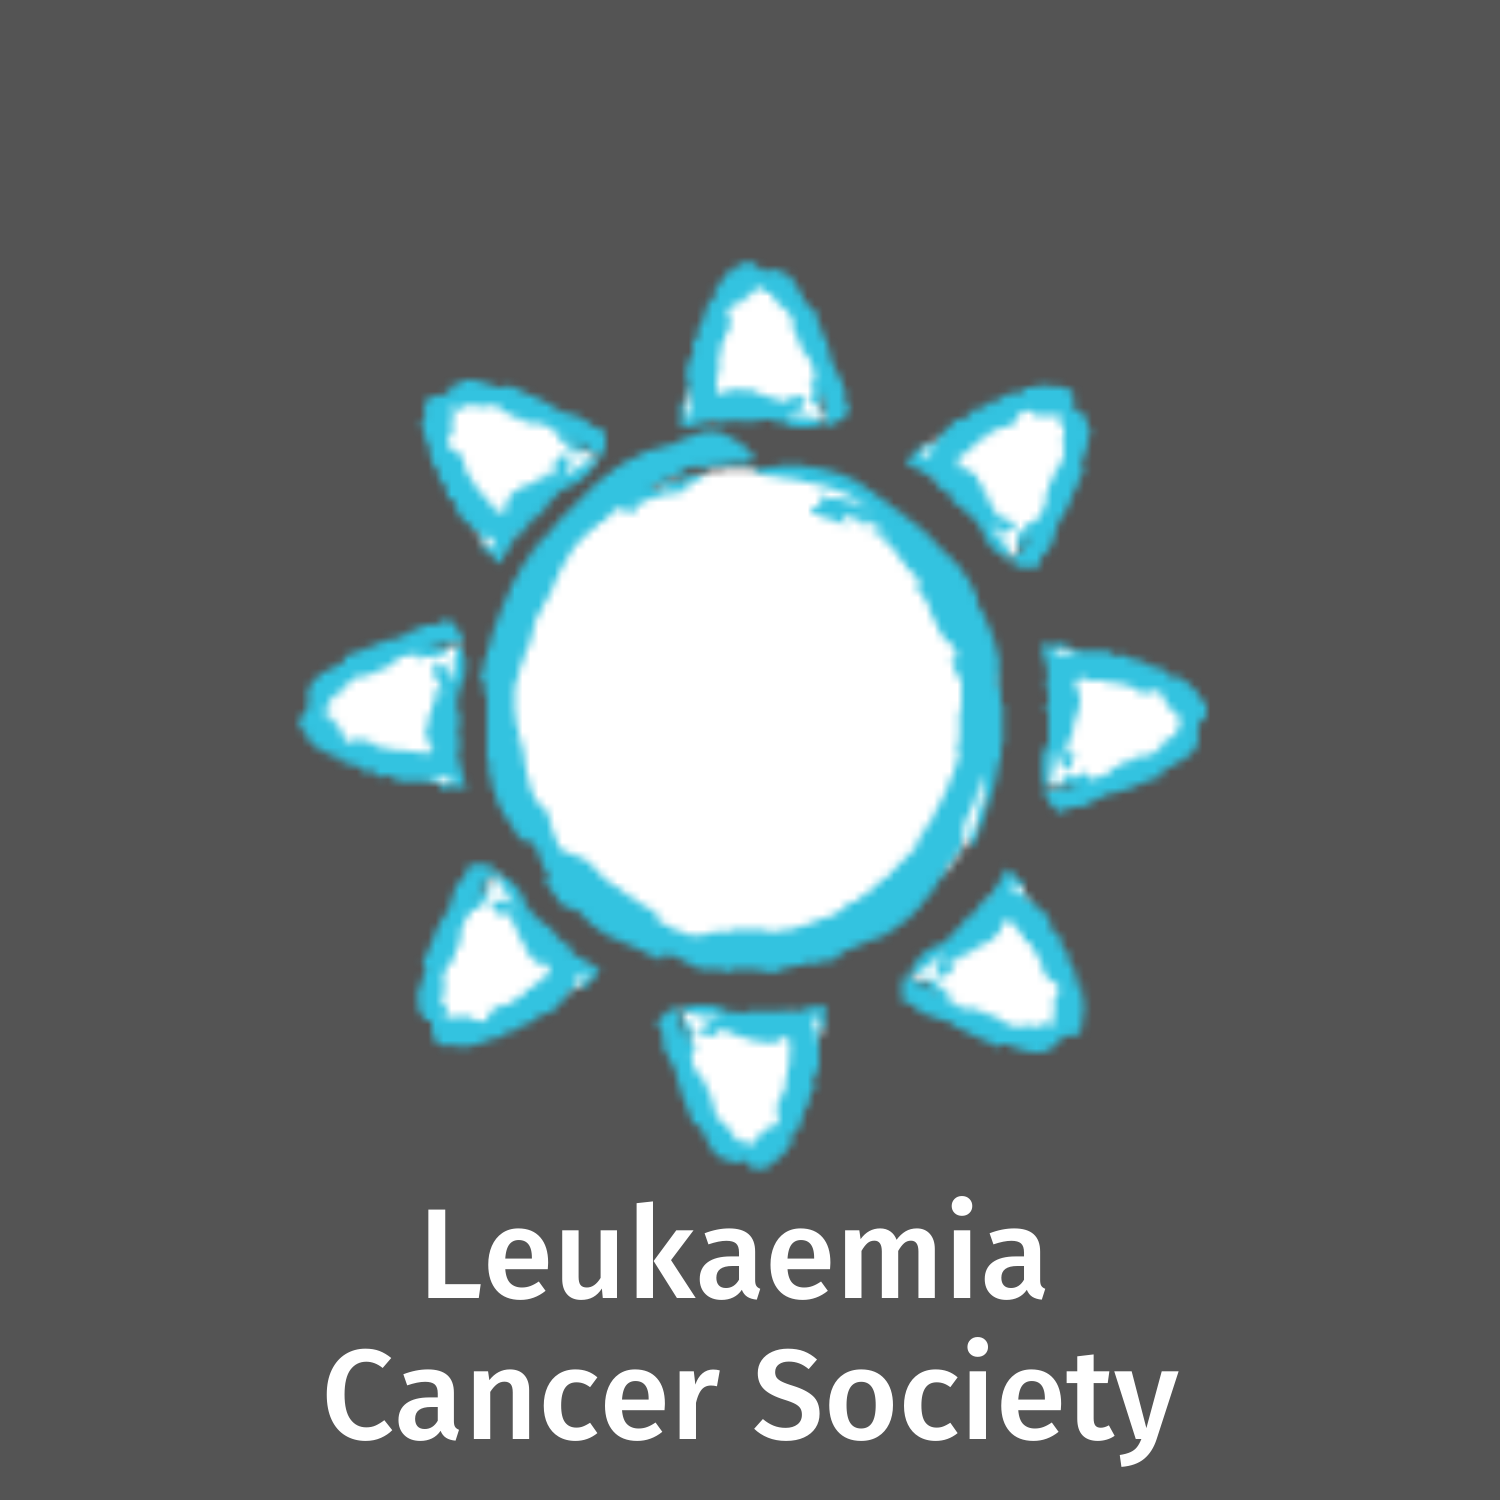 LEUKAEMIA CANCER SOCIETY